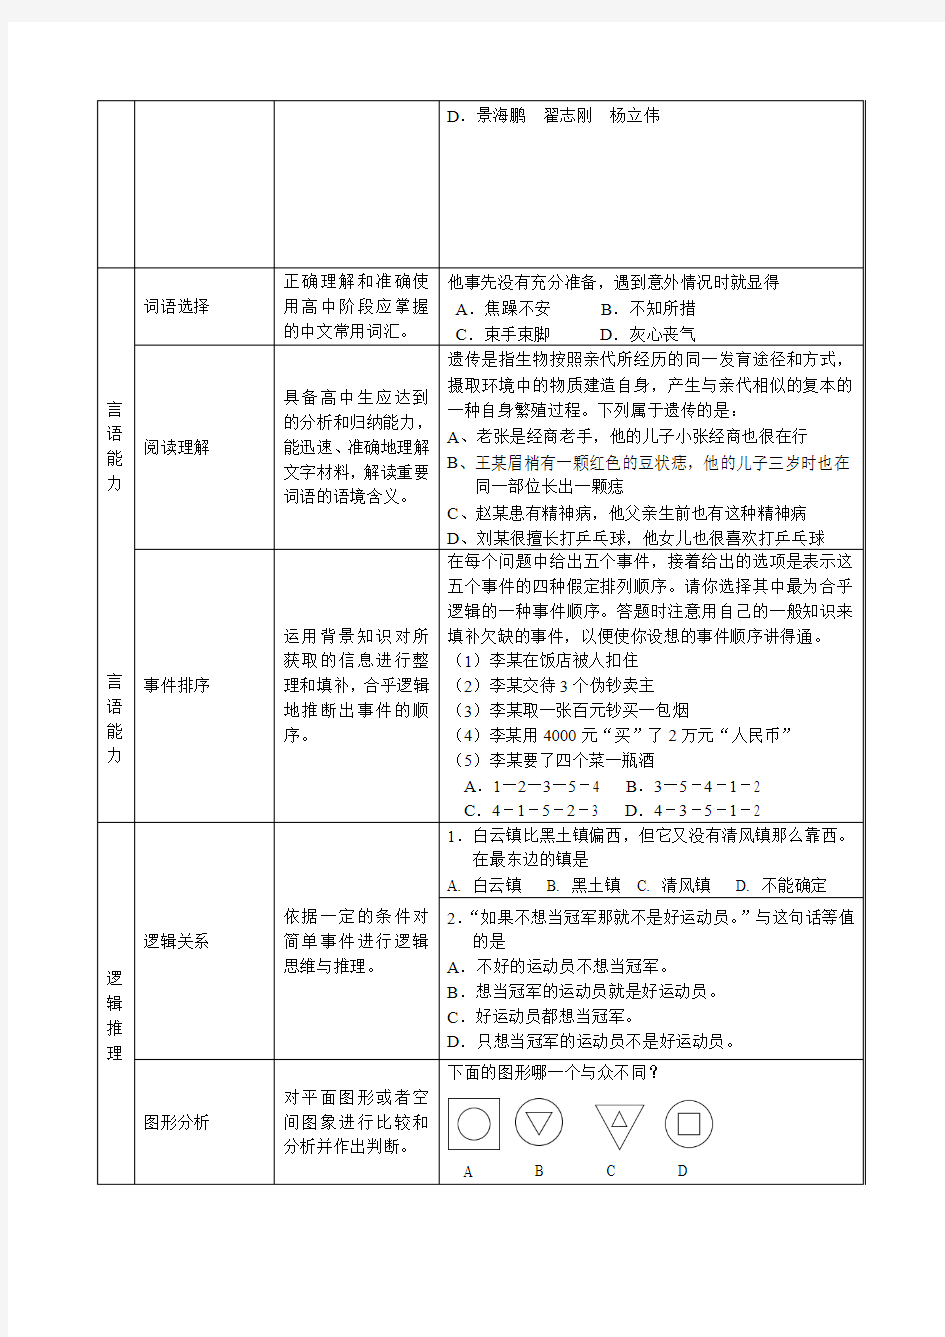 2009年天津市高职院校自主招生考试综合能力考试大纲